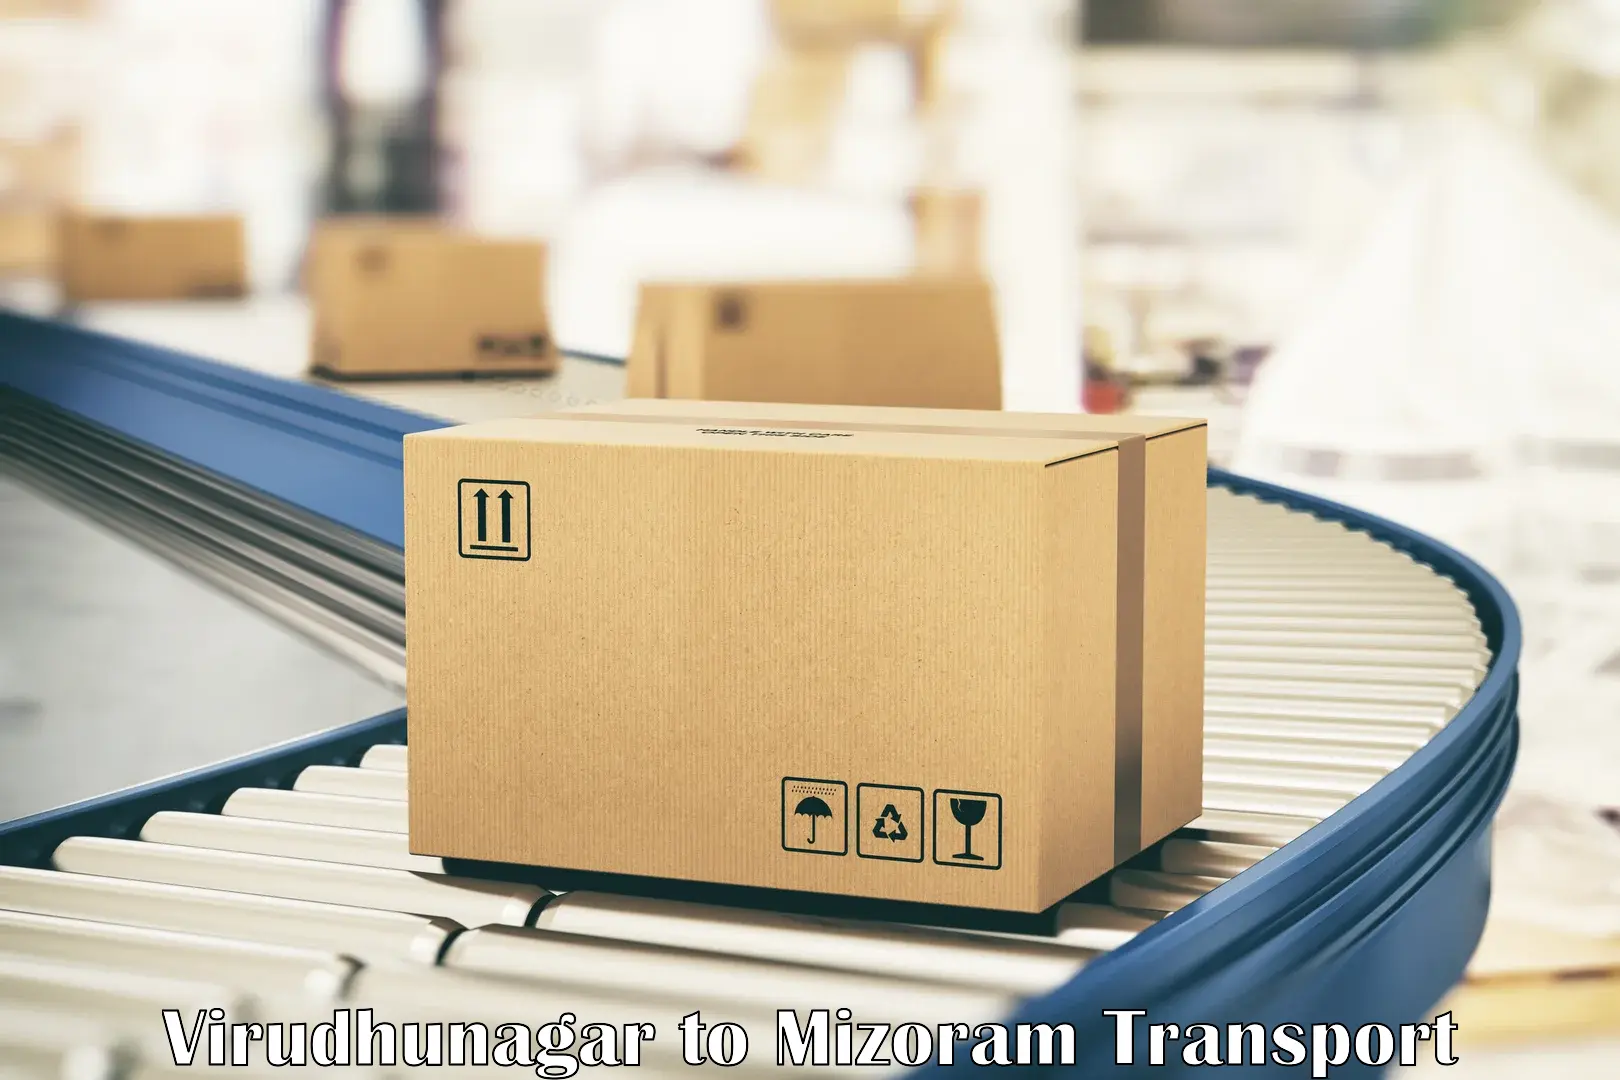 Commercial transport service Virudhunagar to Mizoram